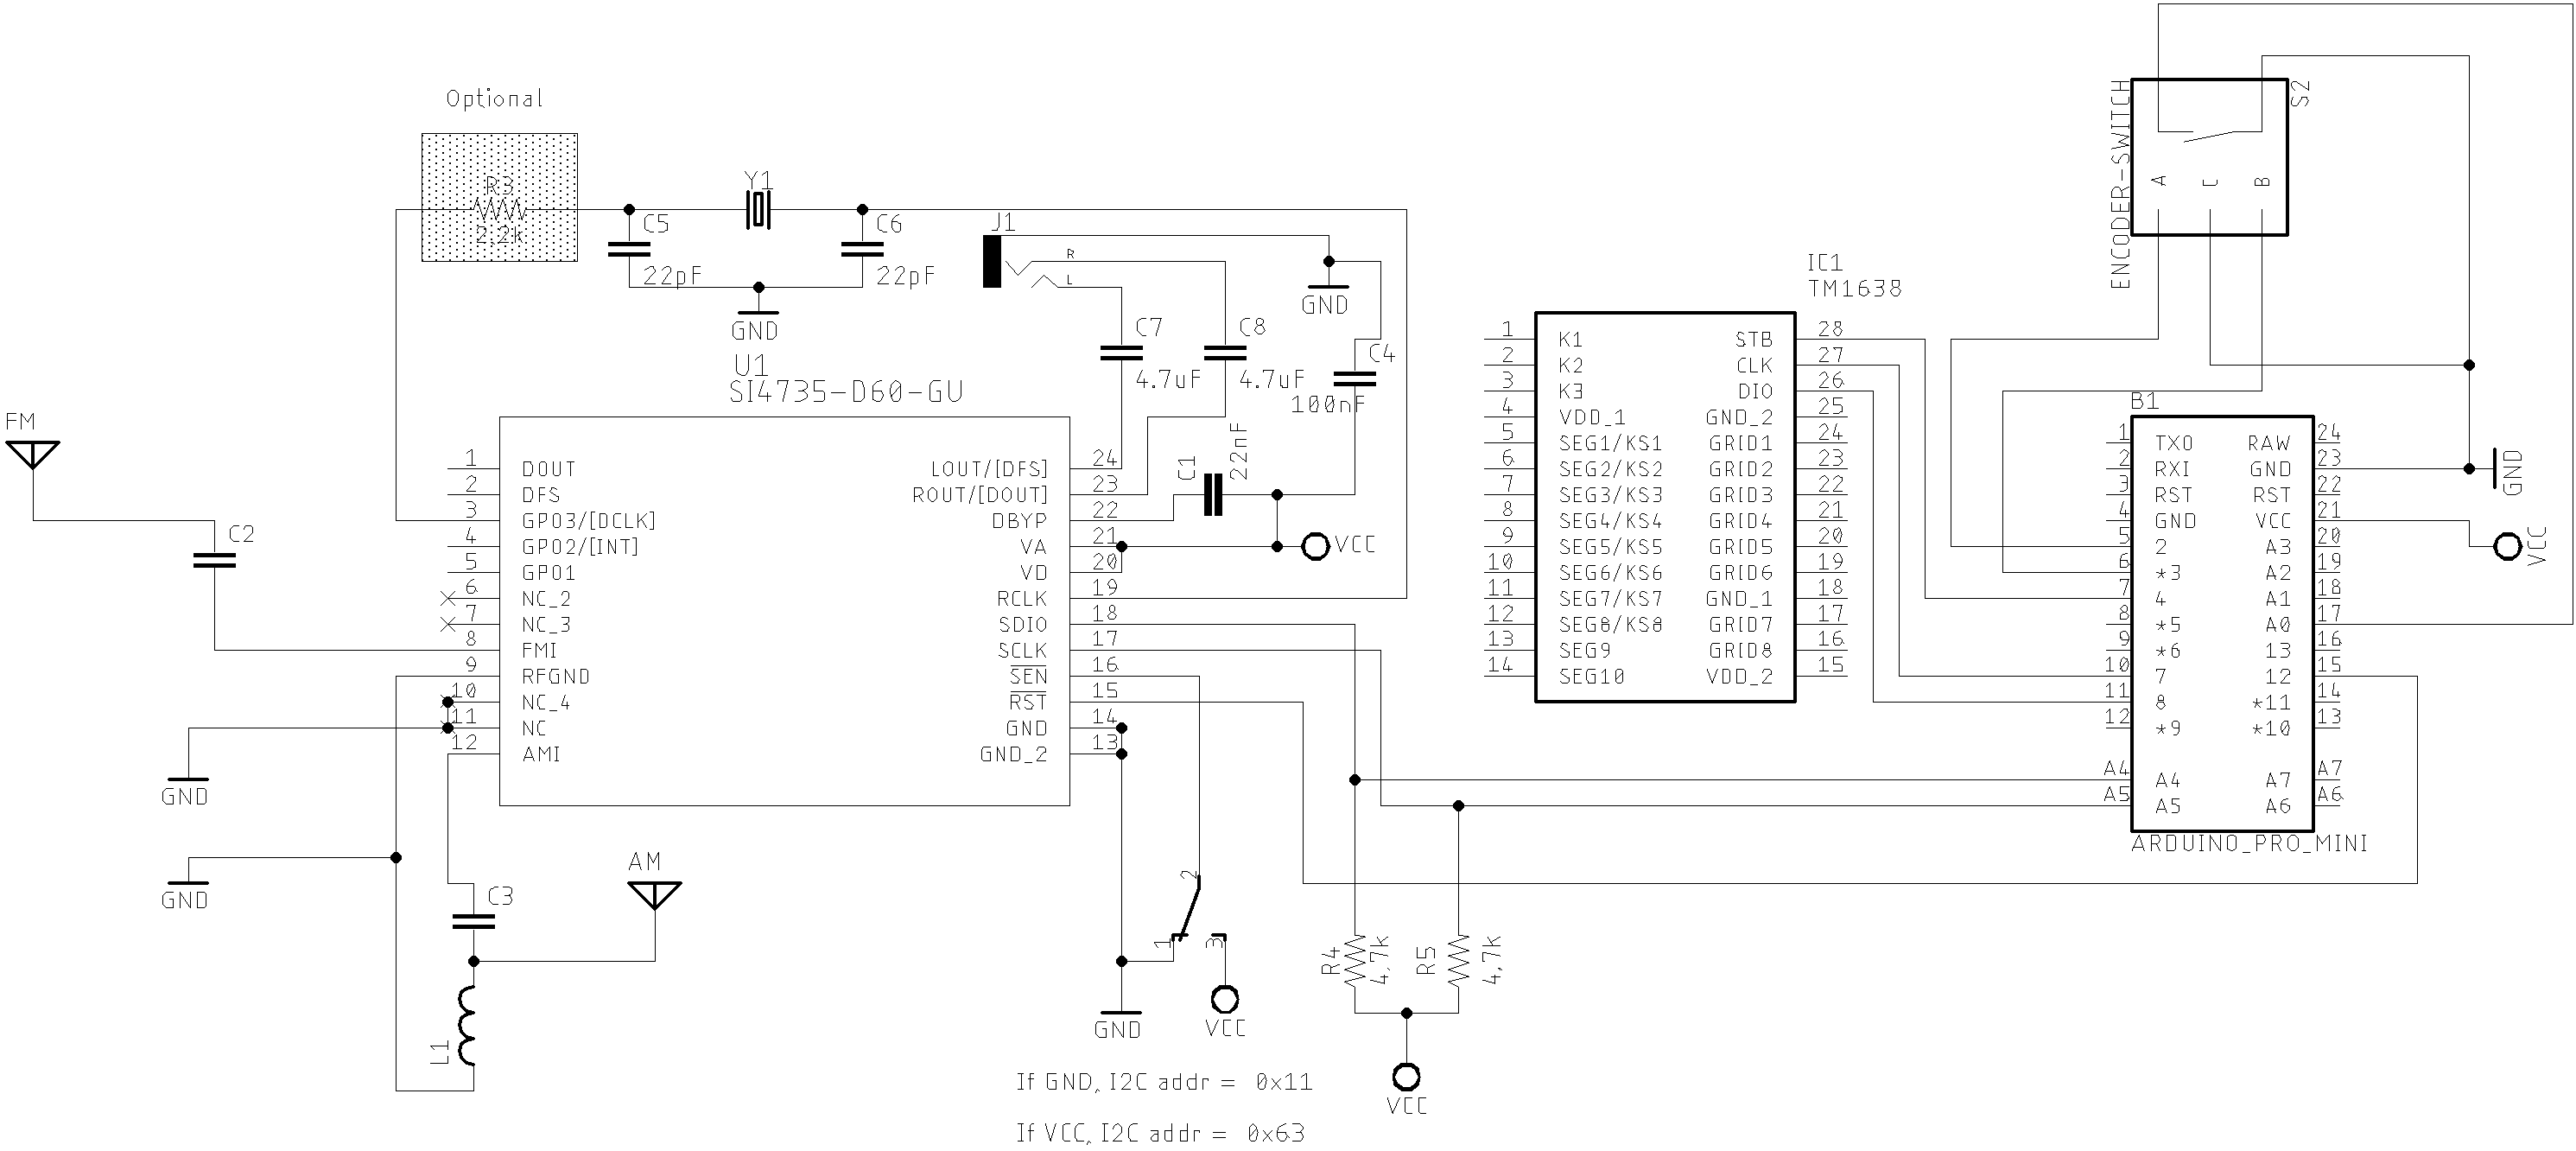 Arduino and TM1638 schematic